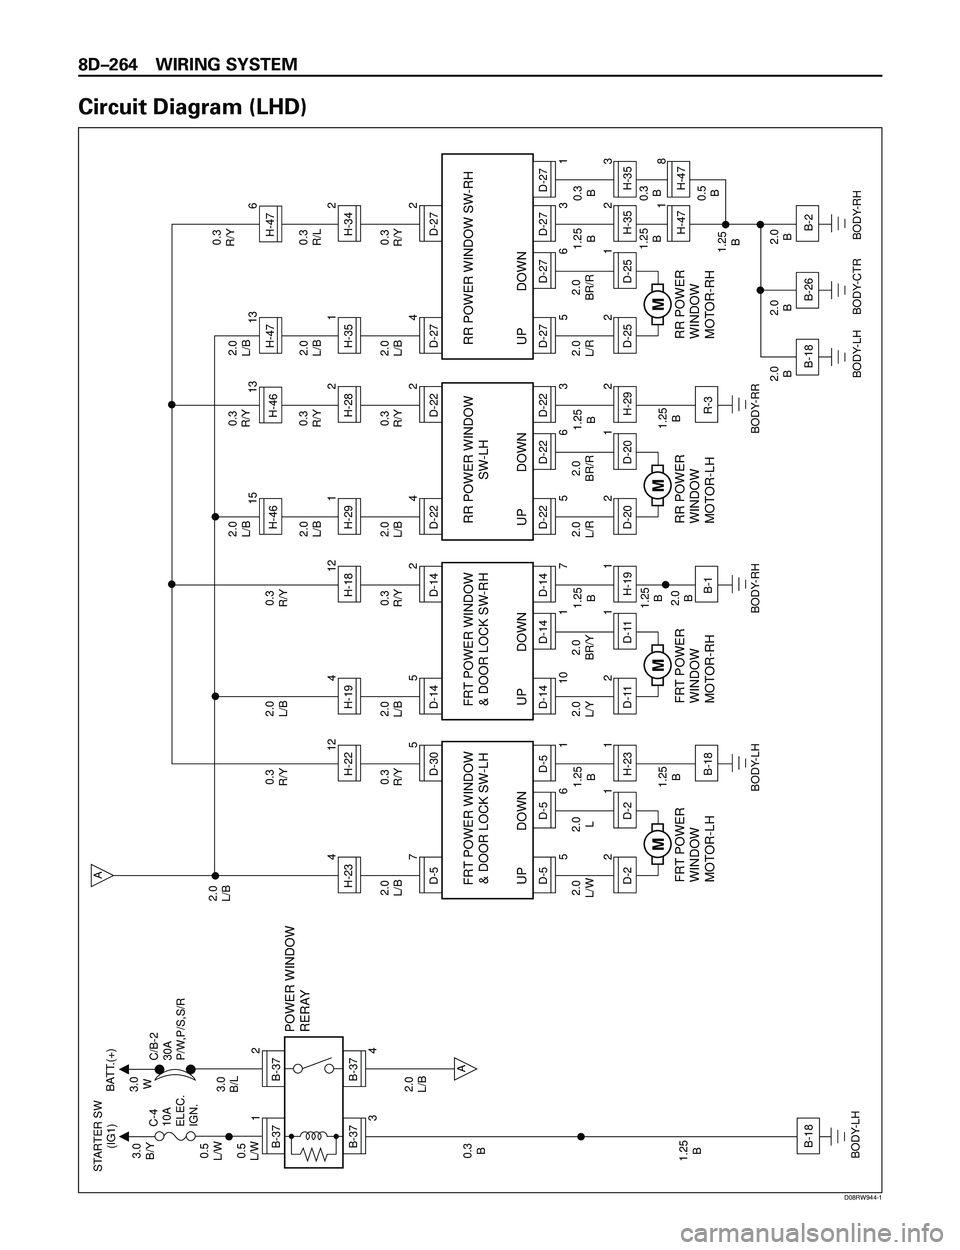 ISUZU TROOPER 1998  Service Owners Guide 8DÐ264 WIRING SYSTEM
Circuit Diagram (LHD)
B-371
B-372
B-37
3
B-37
4A
A
B-18
H-234D-570.3
R/Y0.3
R/Y2.0
L/B
1.25
B
1.25
B
BODY-LH
BODY-LH2.0
L/B 2.0
L/B
2.0
L/W
1.25
B 0.3
B 0.5
L/W0.5
L/W3.0
B/Y STA